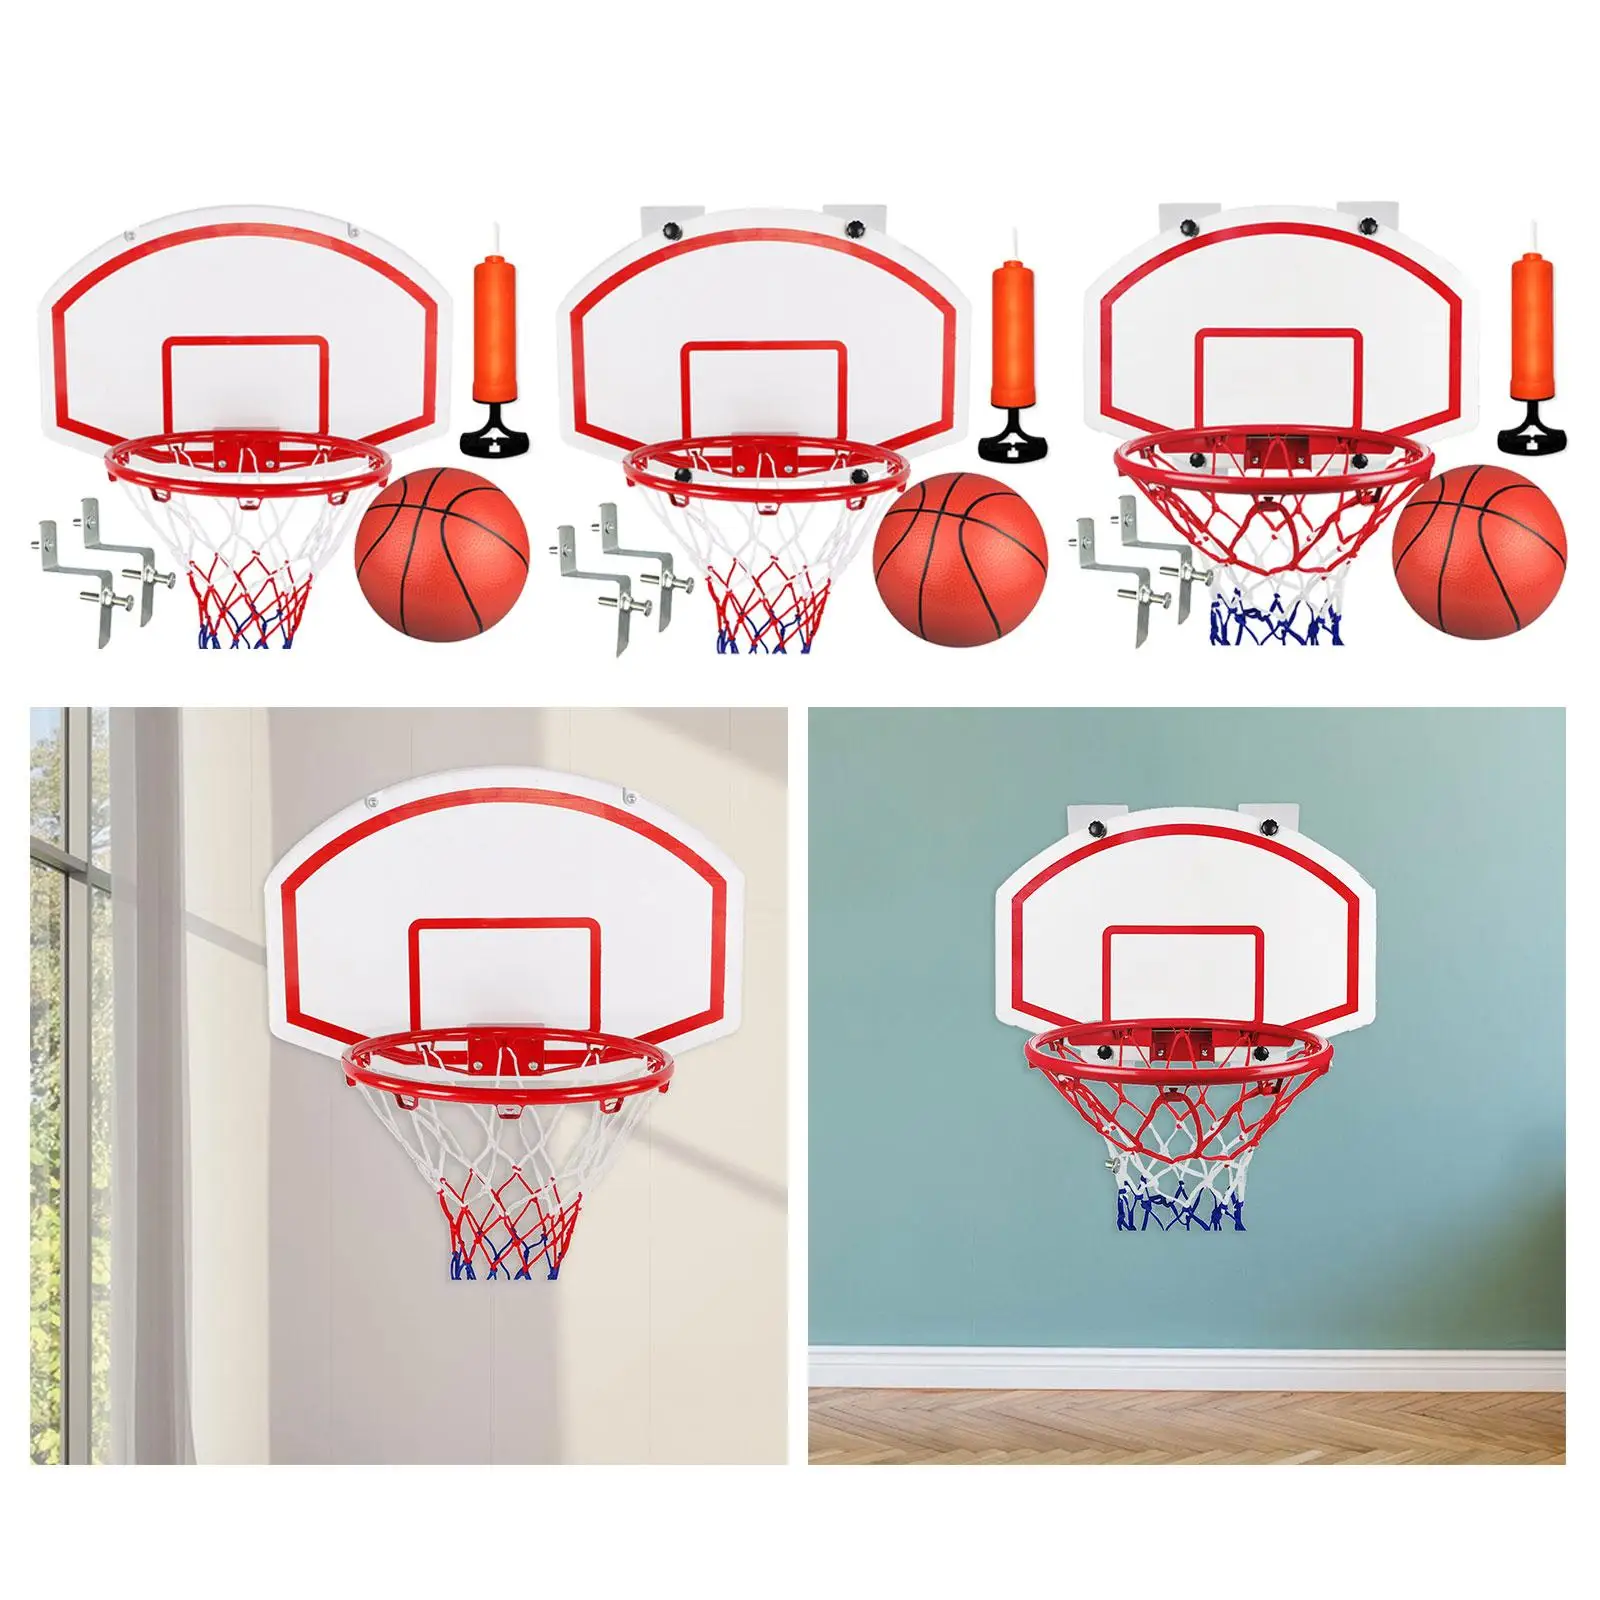 Wall Mounted Basketball Hoop Set Basketball Hoop over The Door for boy gift